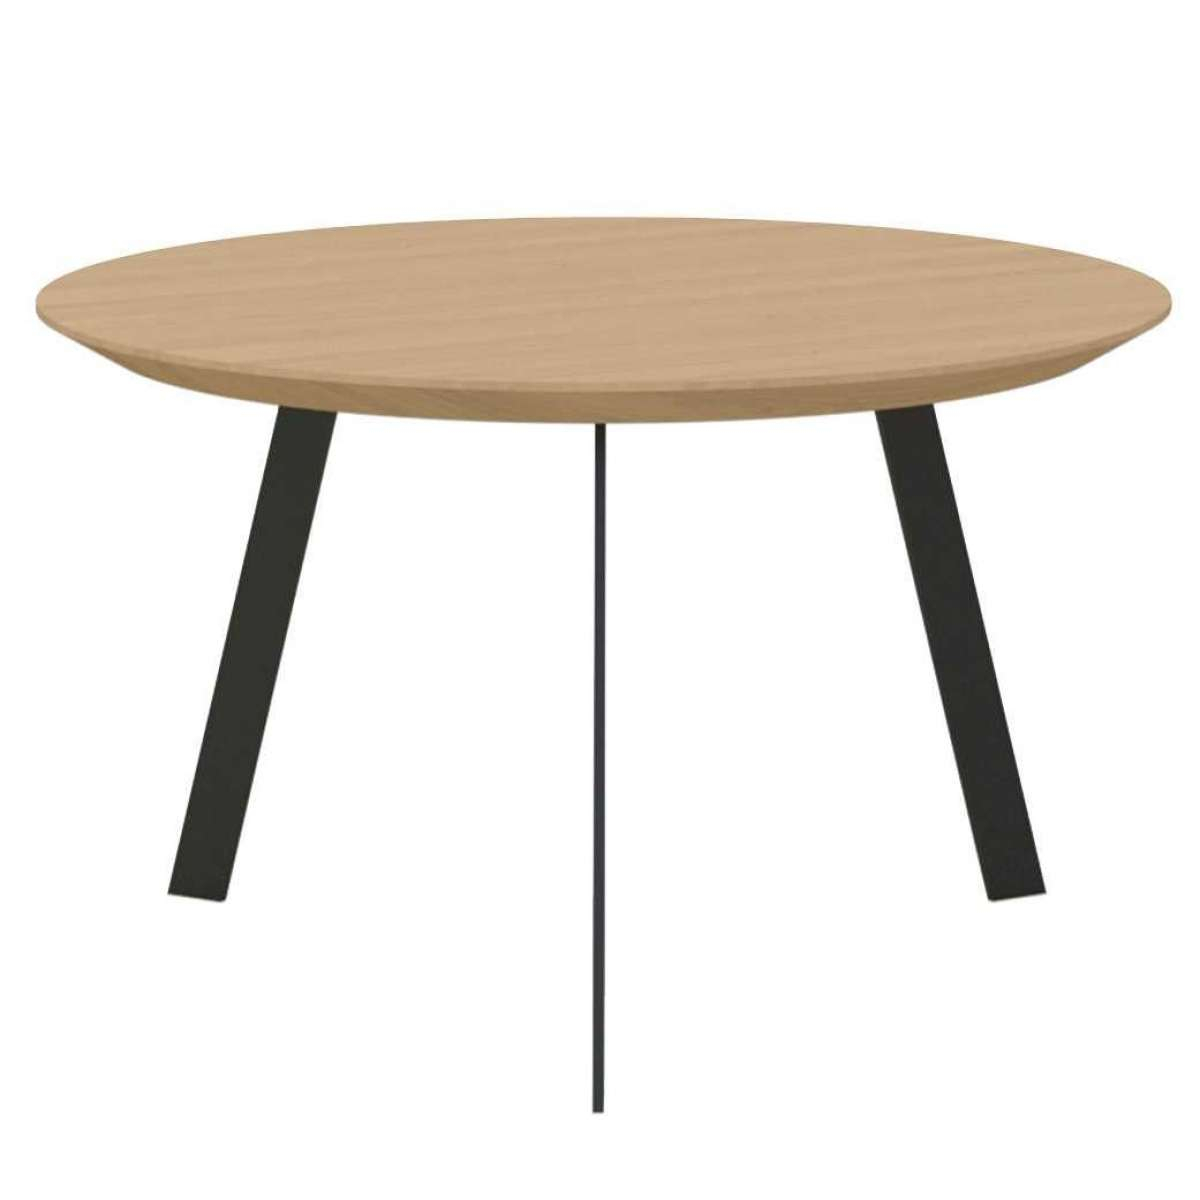 https://www.fundesign.nl/media/catalog/product/n/e/new-co-coffee-table-700-zwart-onderstel-naturel-light-3041-studio-henk-79124e10311afc147449412346a030b3.jpg